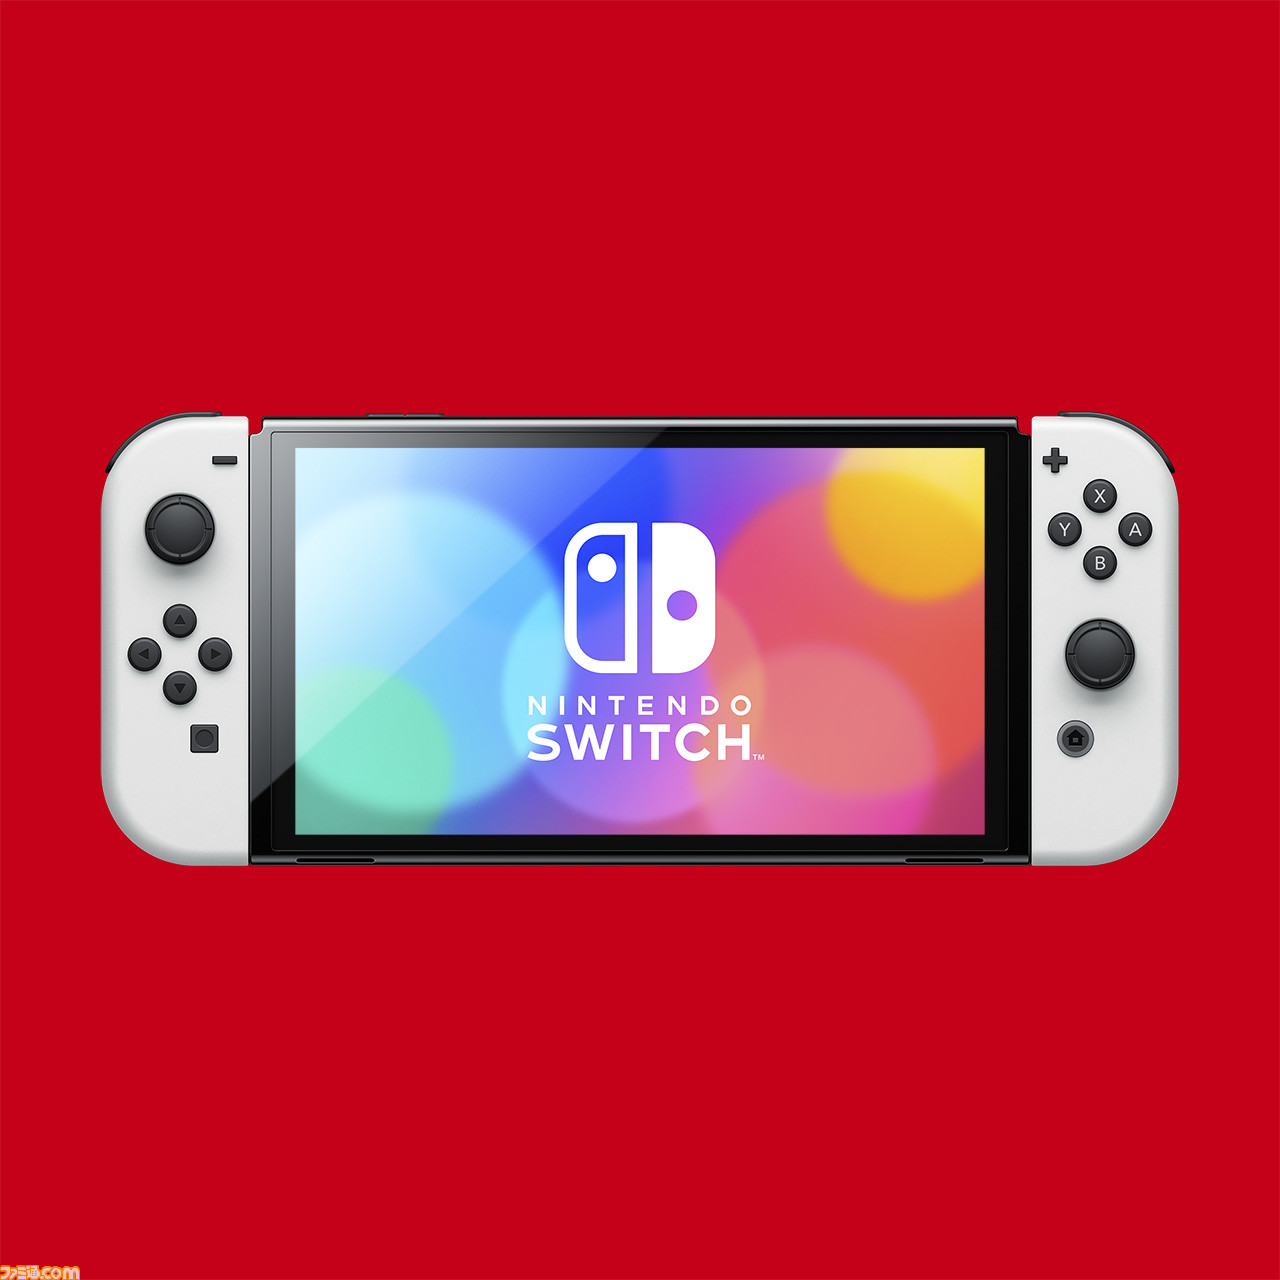 新型Nintendo Switch先行体験レビュー。有機ELディスプレイの発色と幅広スタンドの安定感が秀逸 |  ゲーム・エンタメ最新情報のファミ通.com